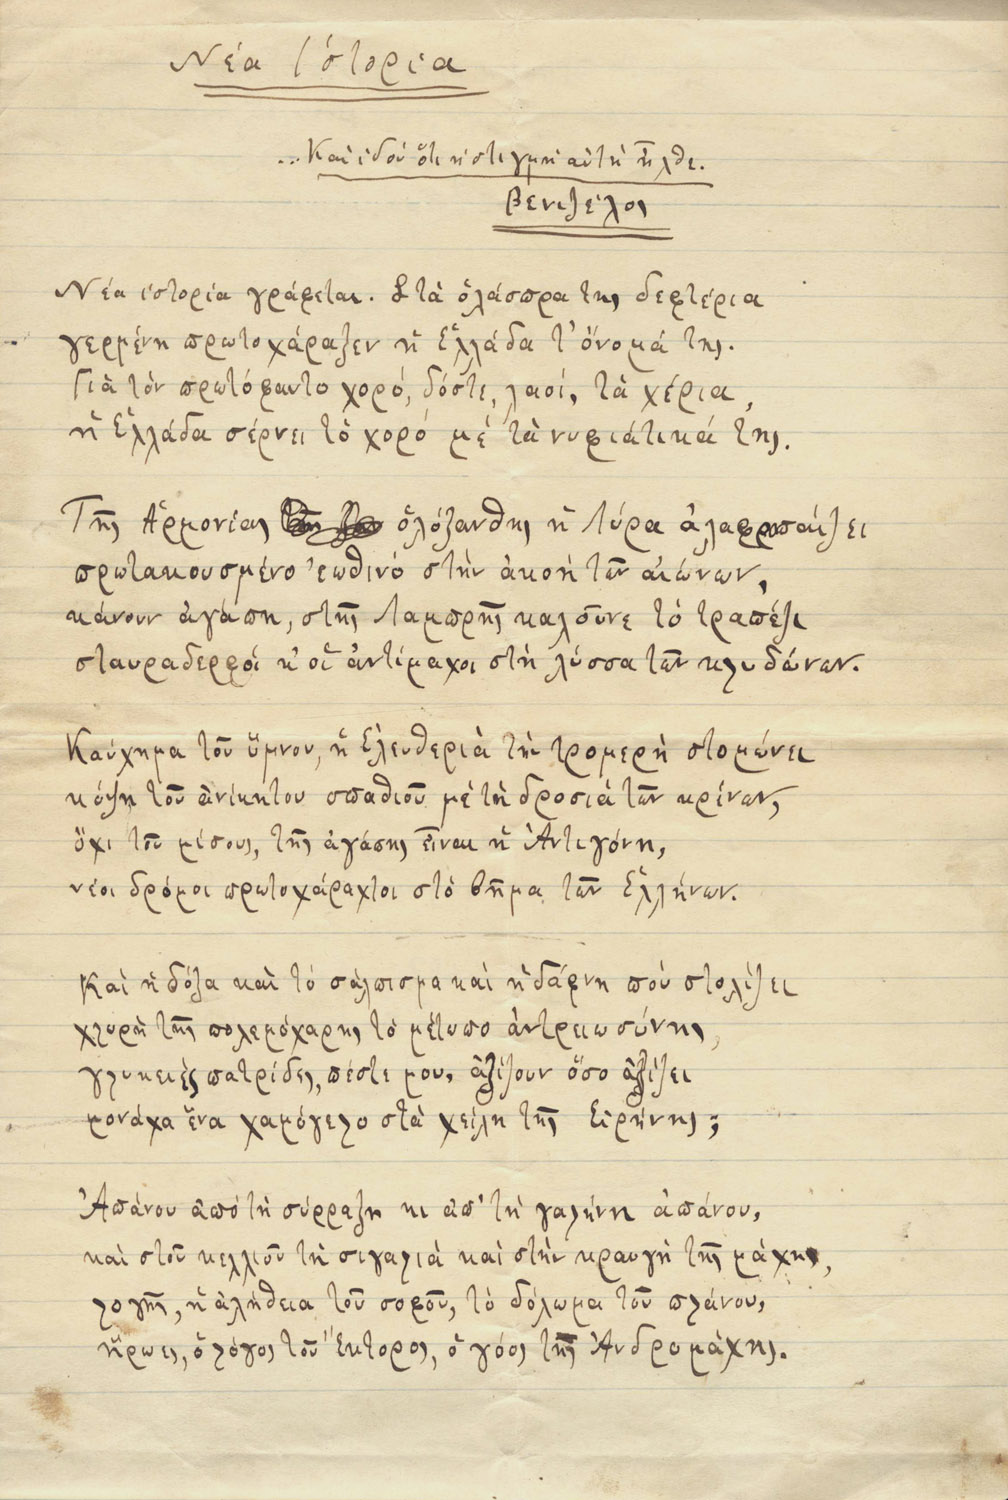 ΠΑΛΑΜΑΣ, Κωστῆς, 1859-1943, ποιητής.